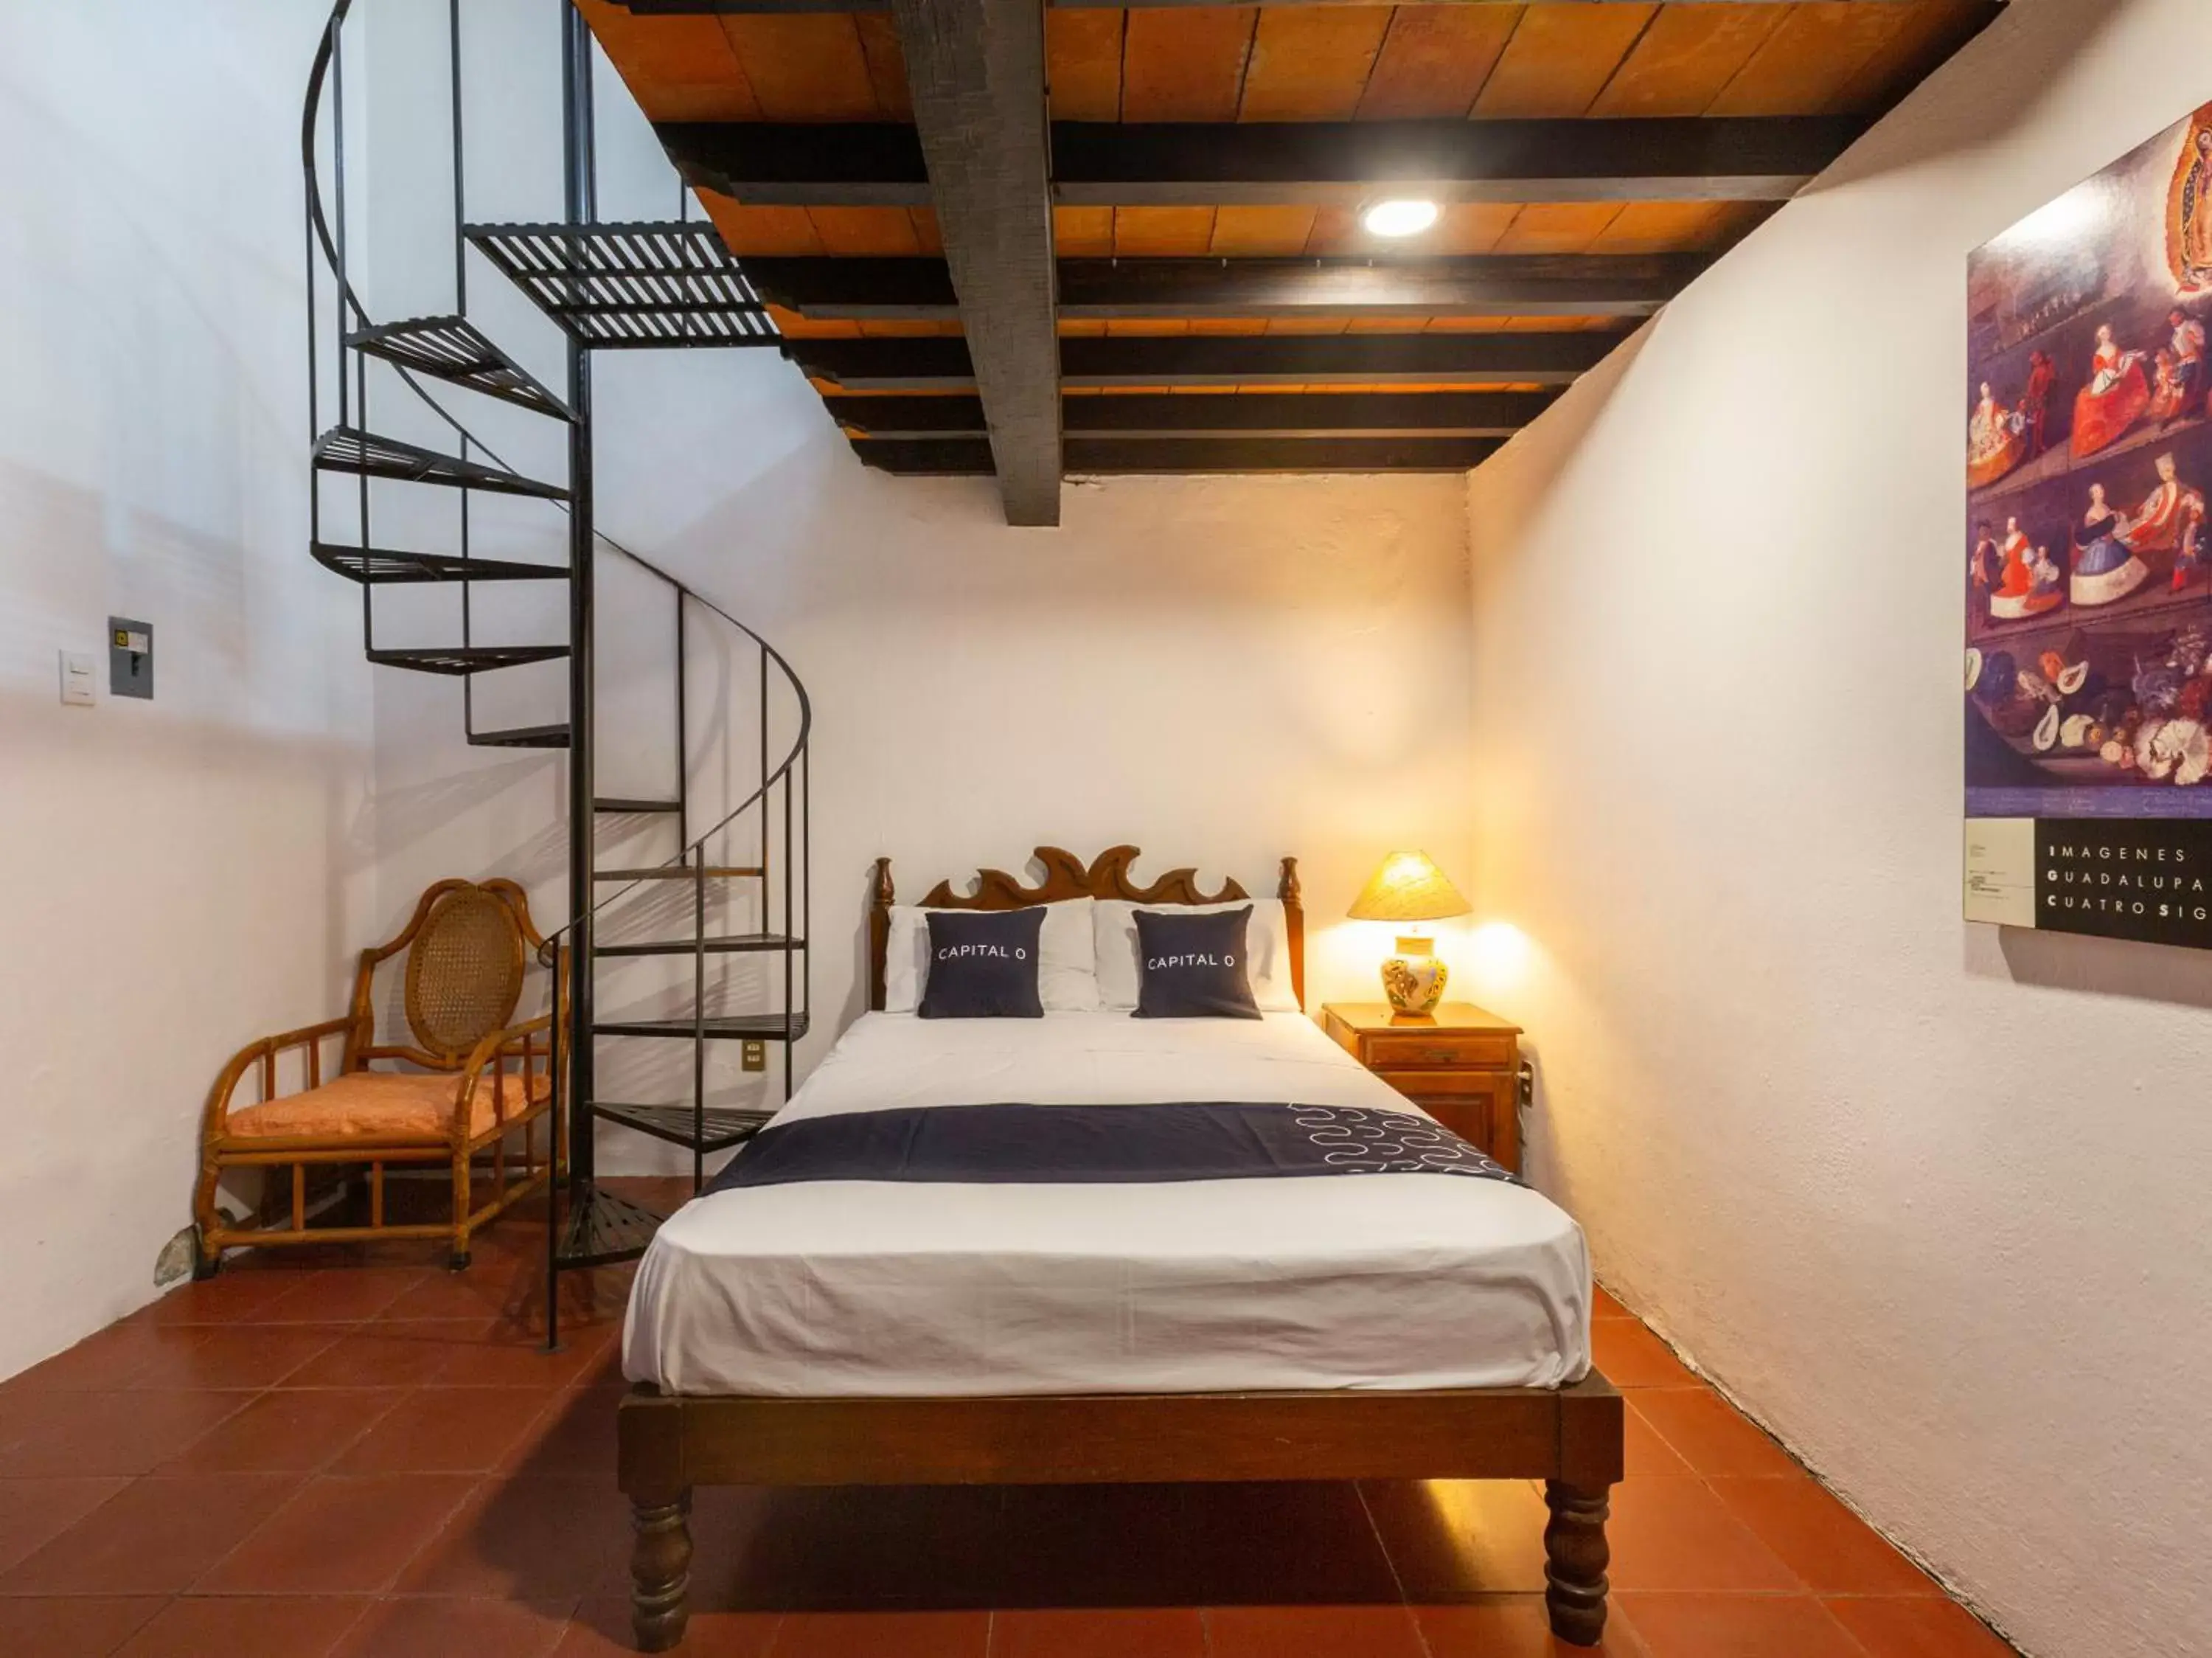 Bedroom, Bed in Capital O Posada La Casa De La Tia, Oaxaca